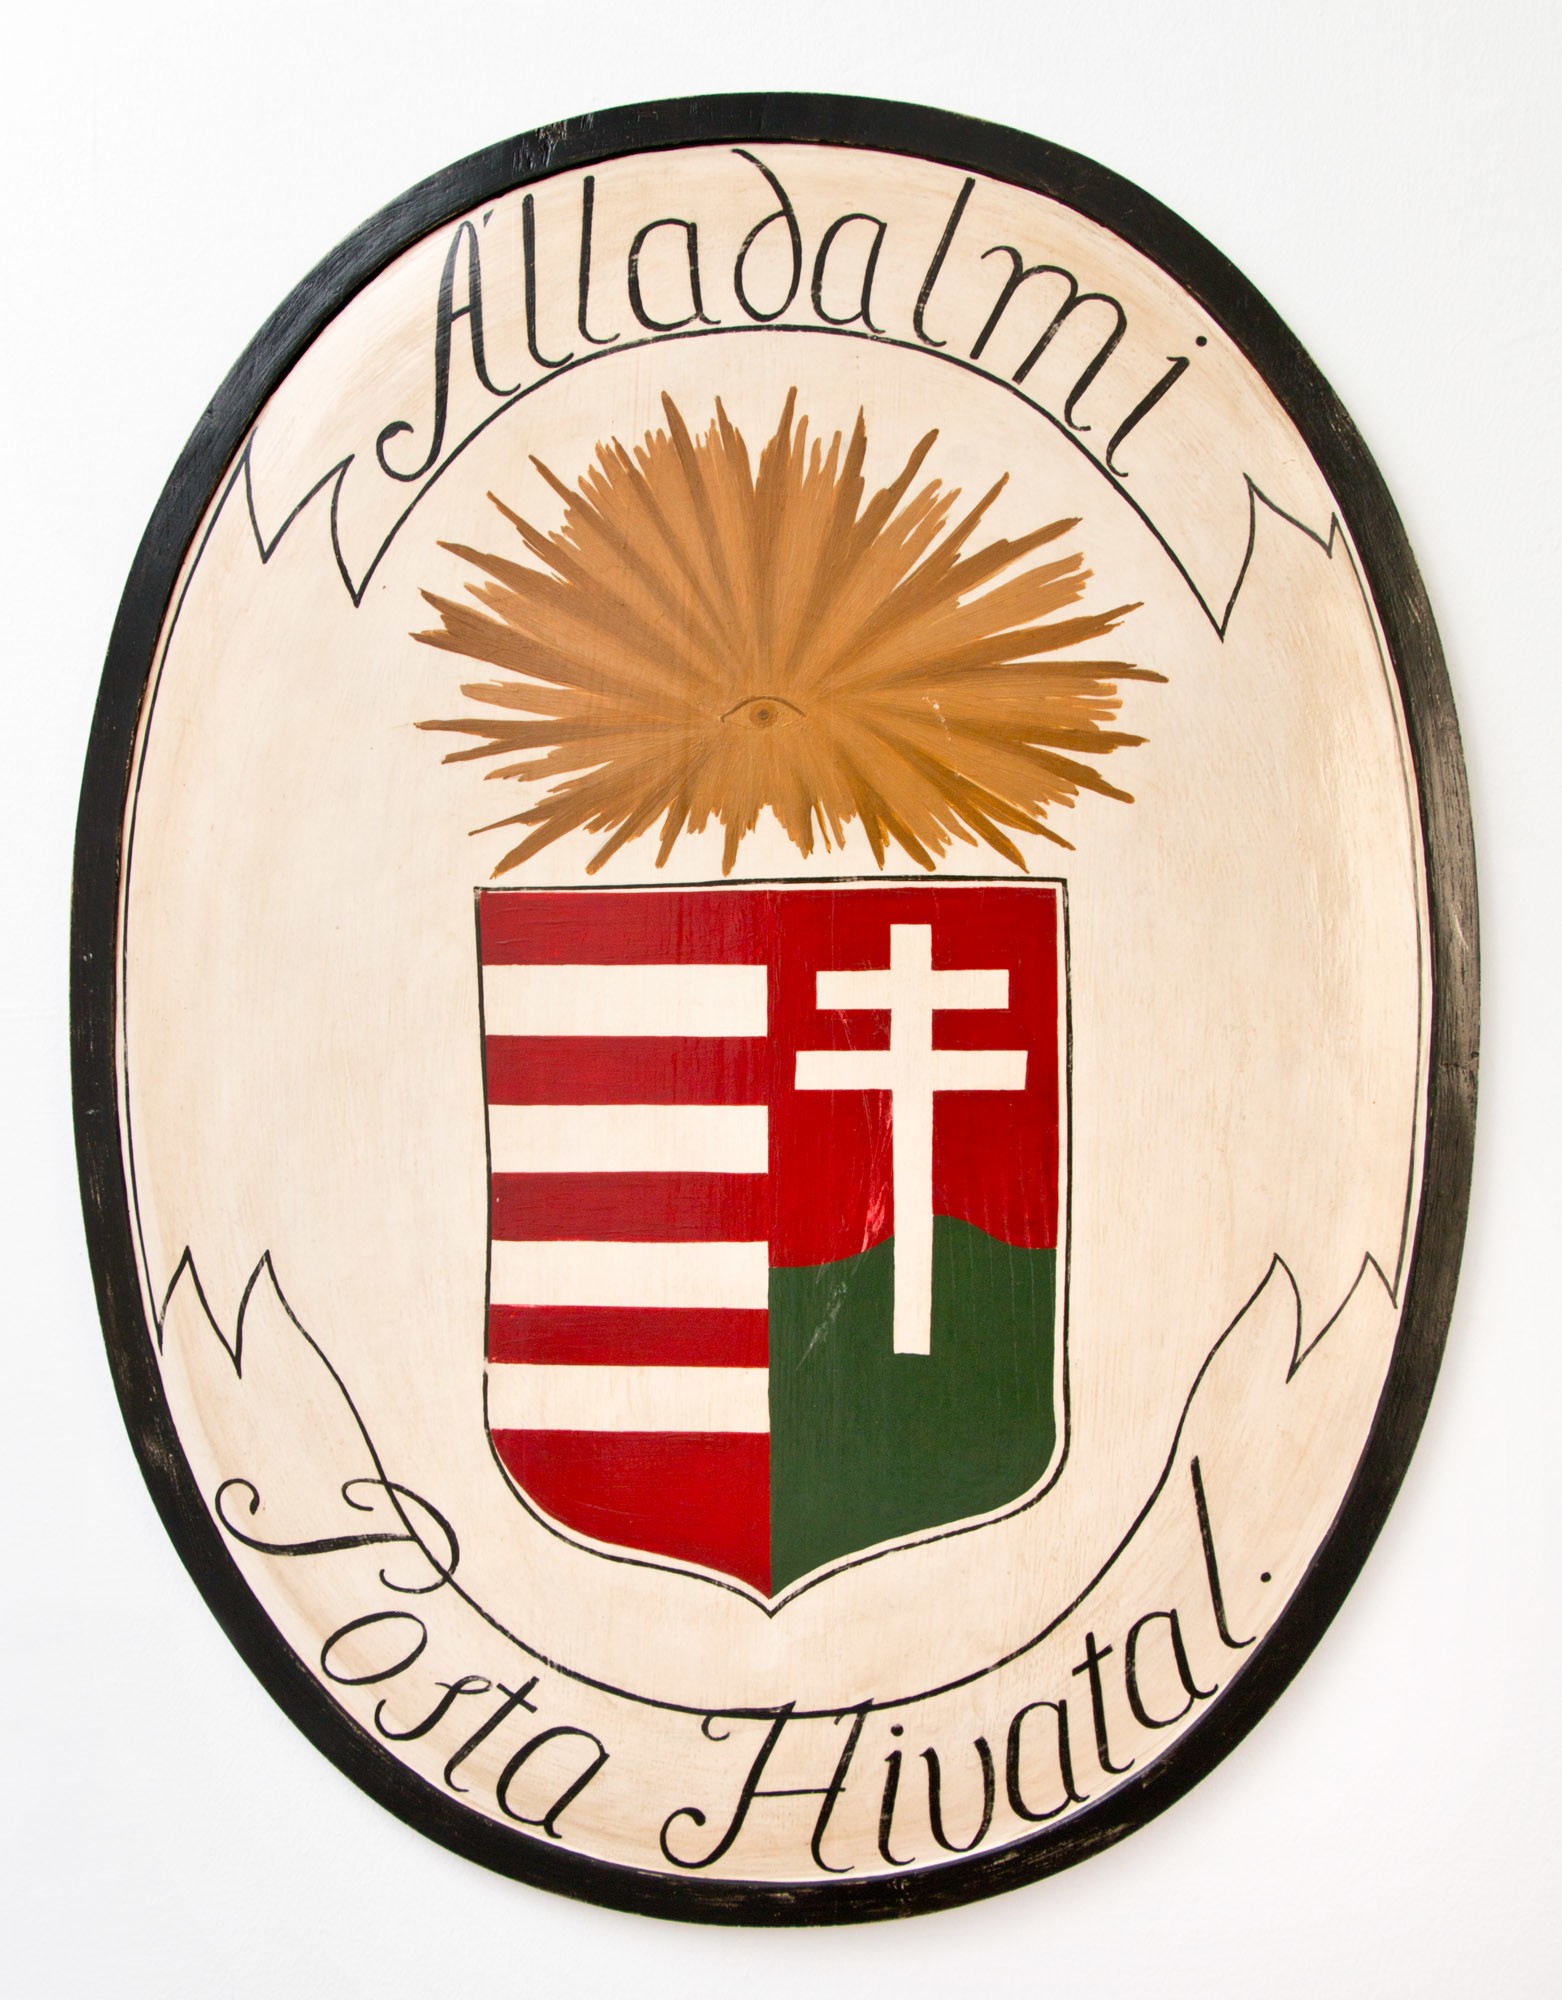 Címertábla „ÁLLADALMI POSTAHIVATAL 1849” (Postamúzeum CC BY-NC-SA)